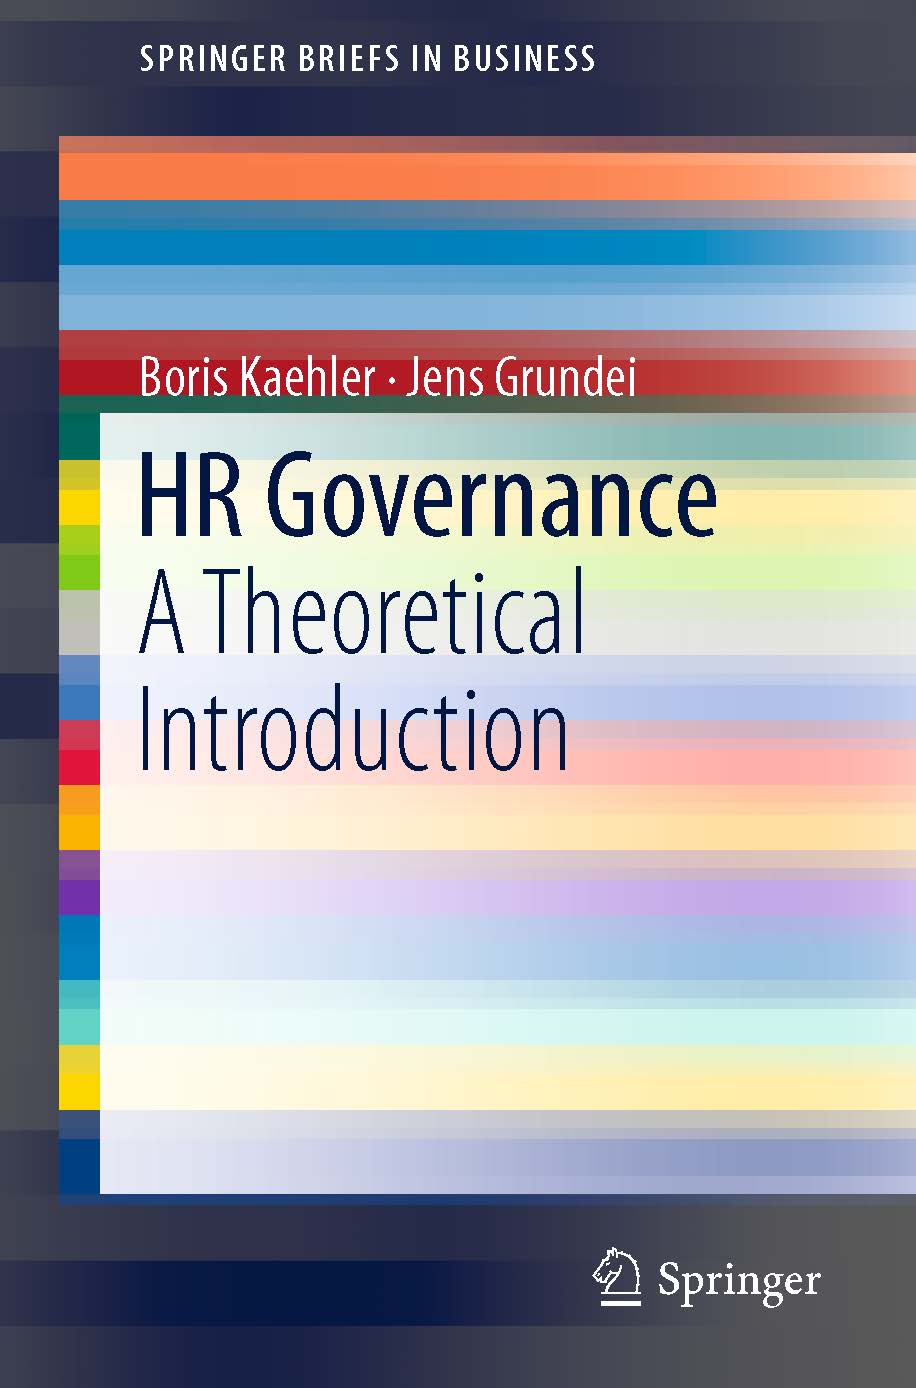 页面提取自－2019_Book_HR Governance.jpg